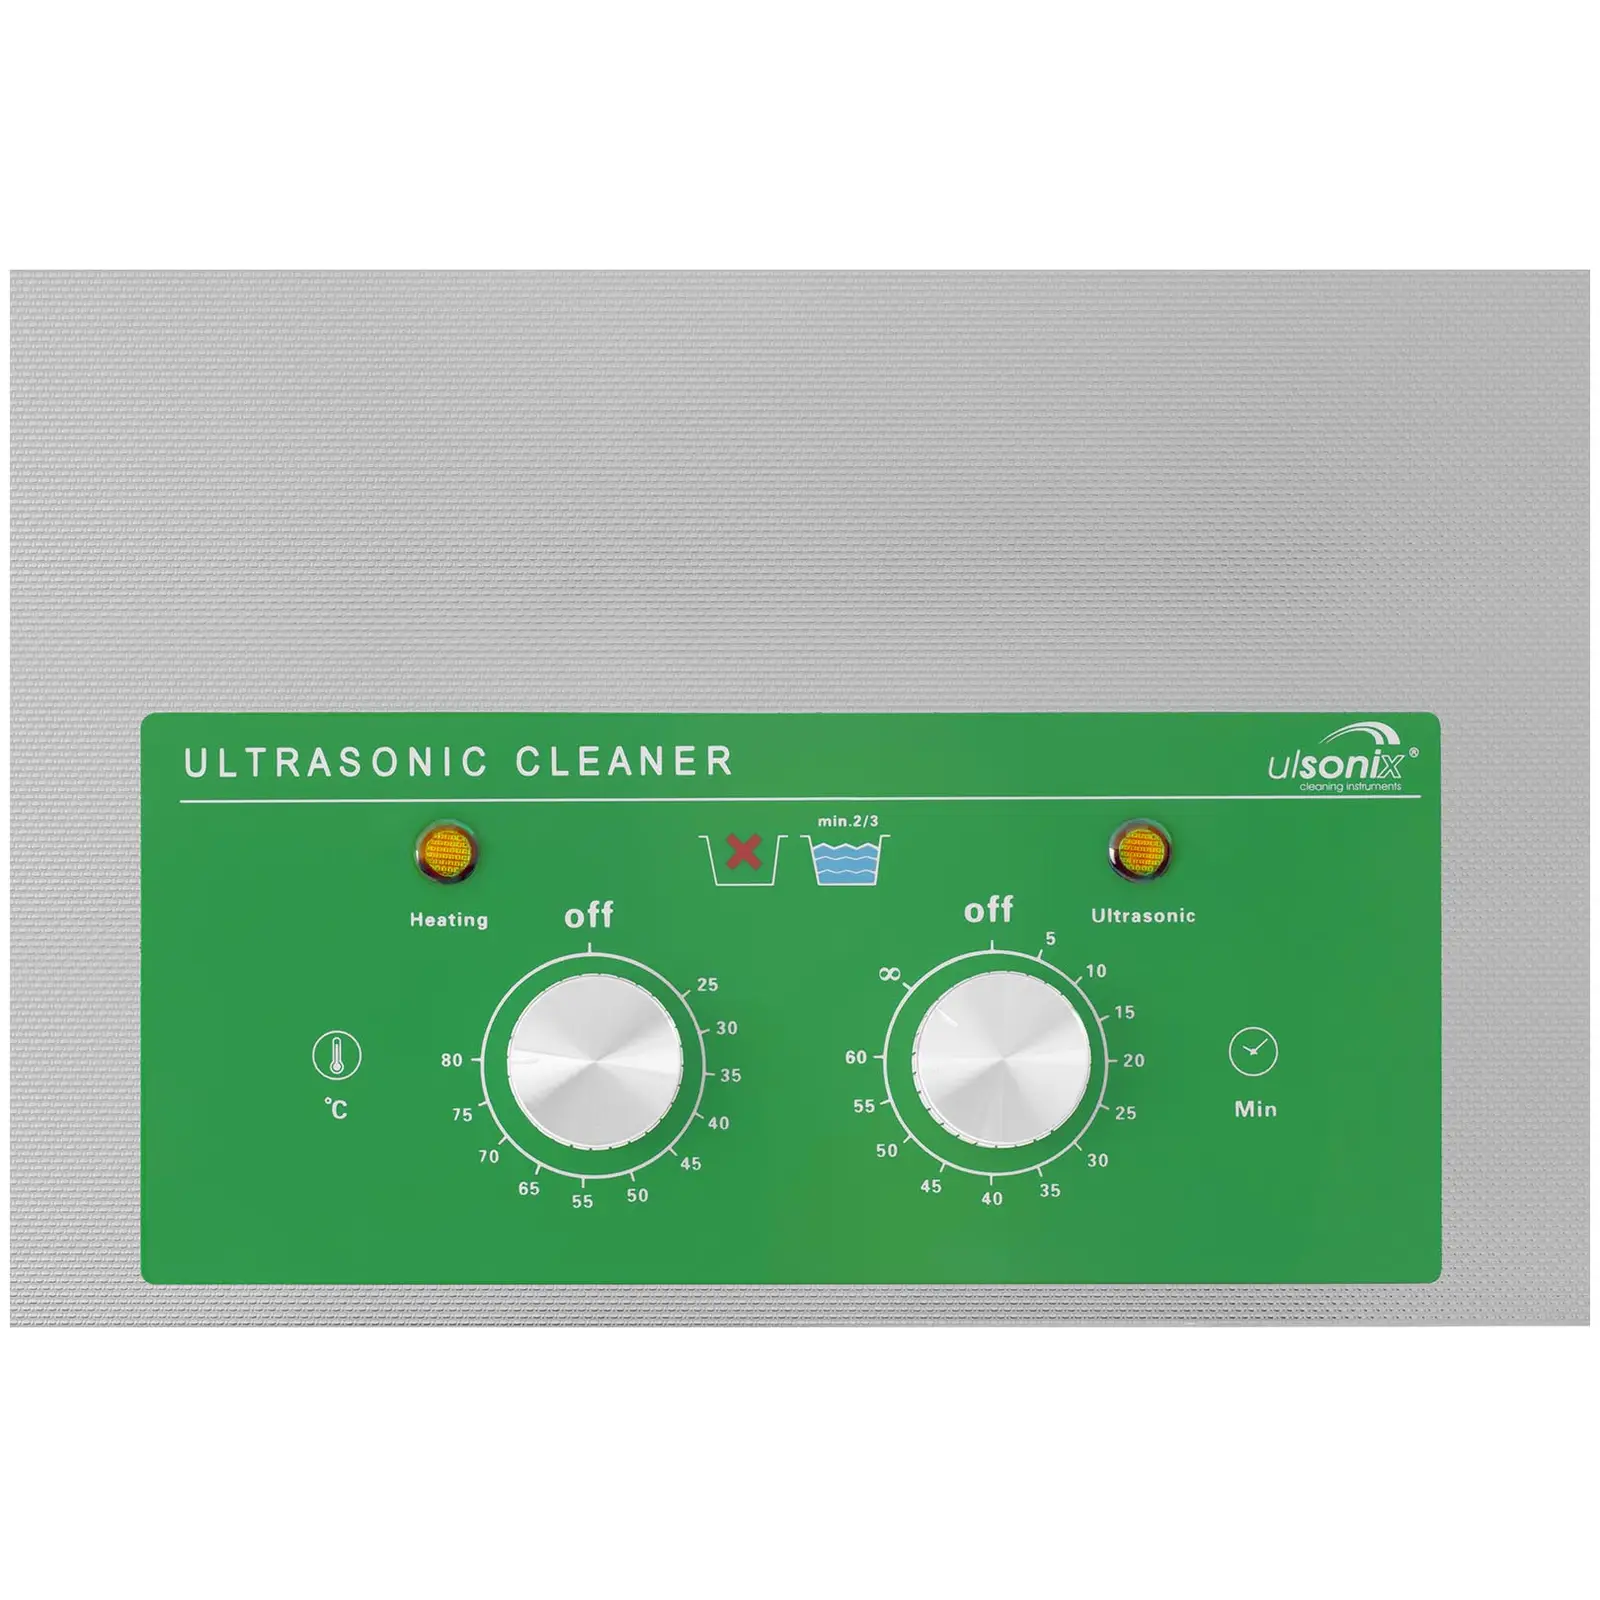 Myjka ultradźwiękowa - 28 litrów - 480 W - Basic Eco